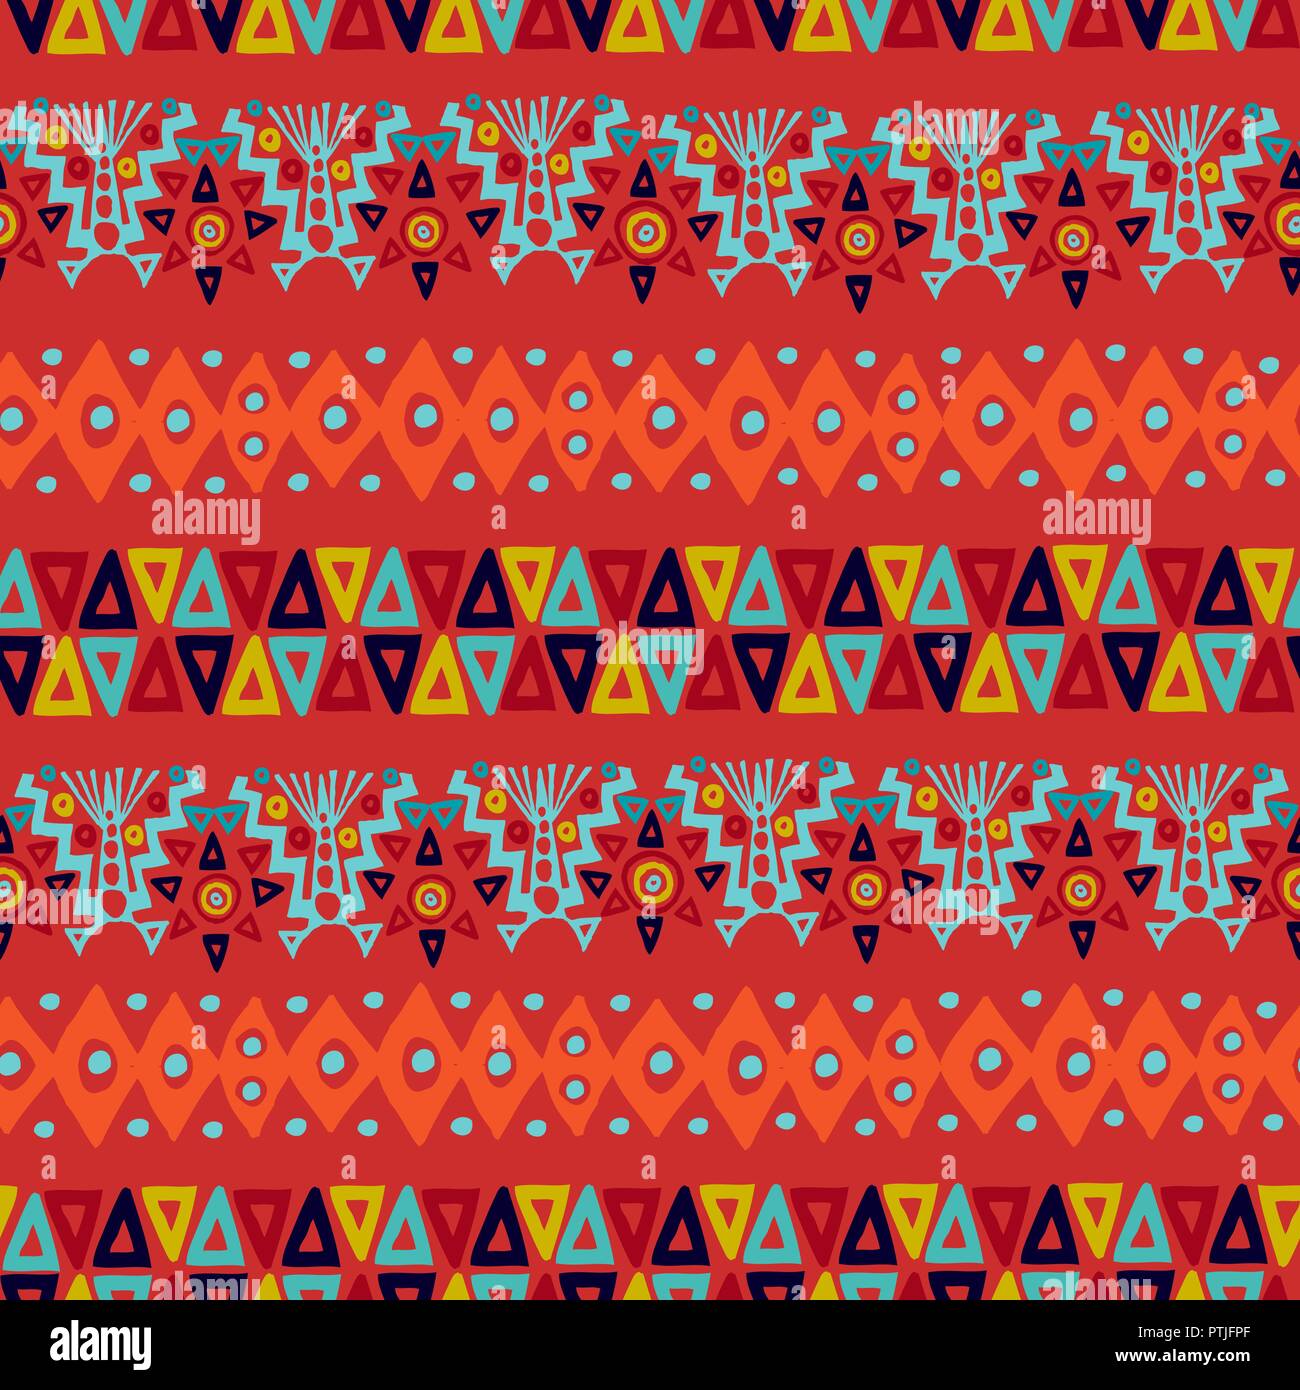 Boho ethnique style tribal motif de fond transparent avec des formes folkloriques colorés. Idéal pour les dessins de tissu, papier et impression toile web. Vecteur EPS10. Illustration de Vecteur